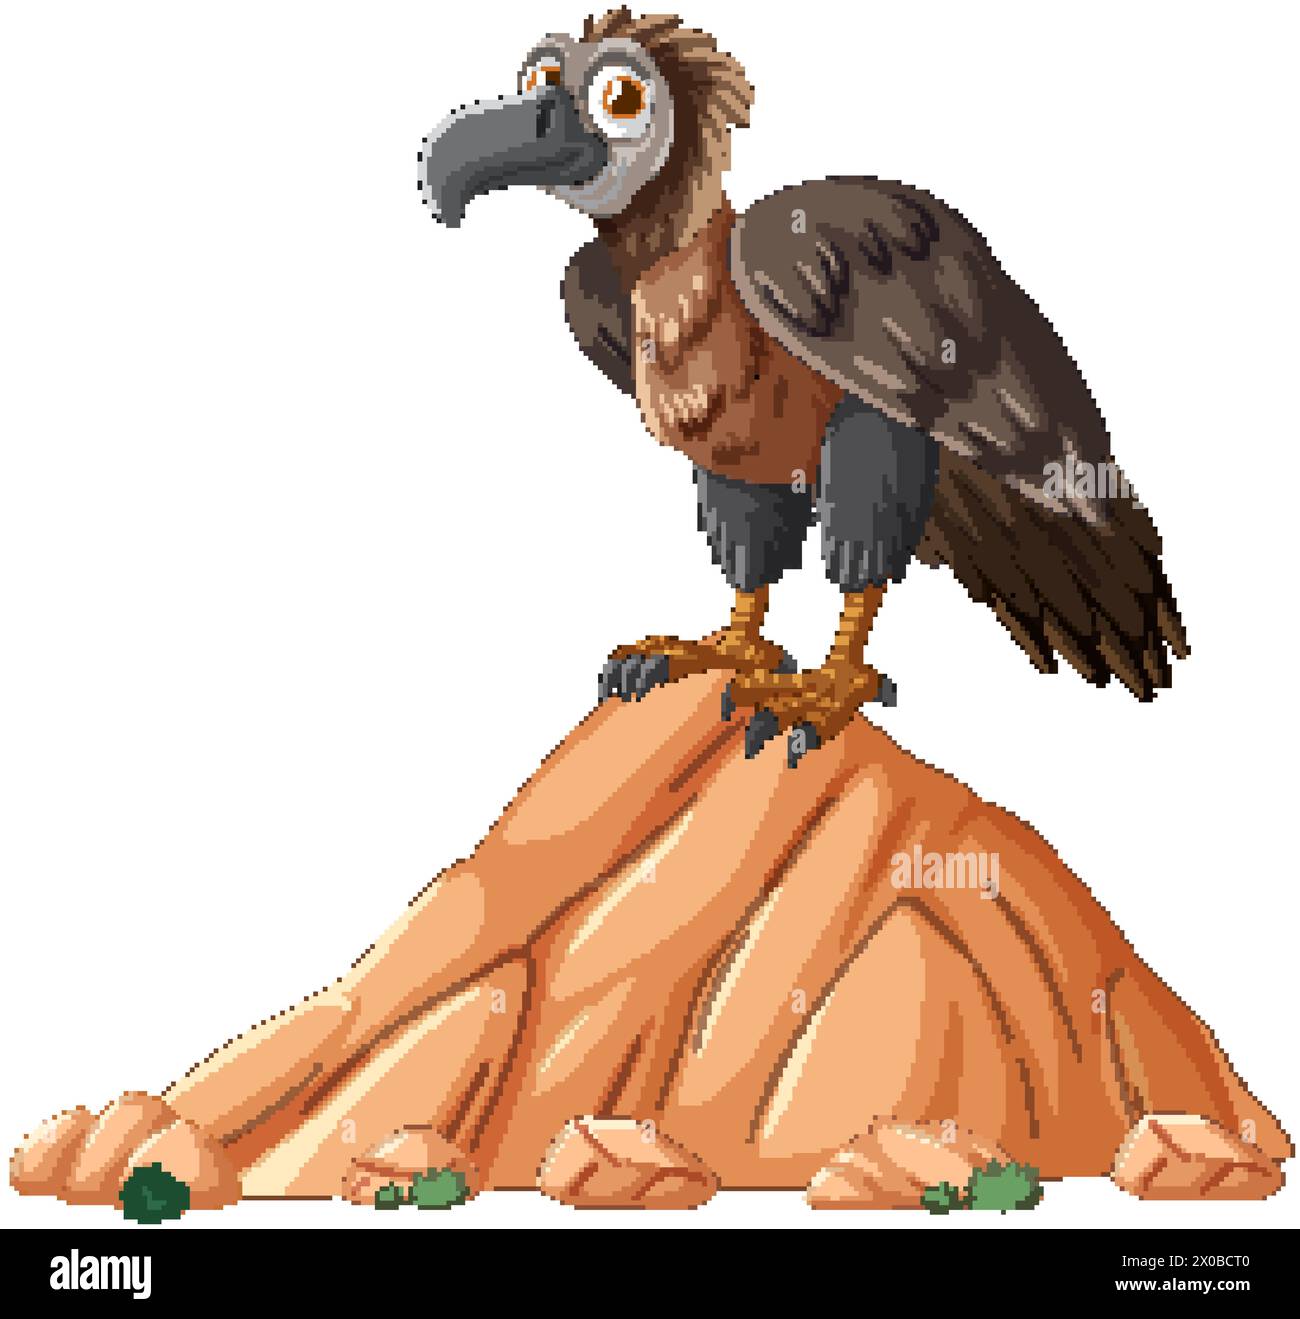 Cartoon vulture standing atop a desert rock. Stock Vector